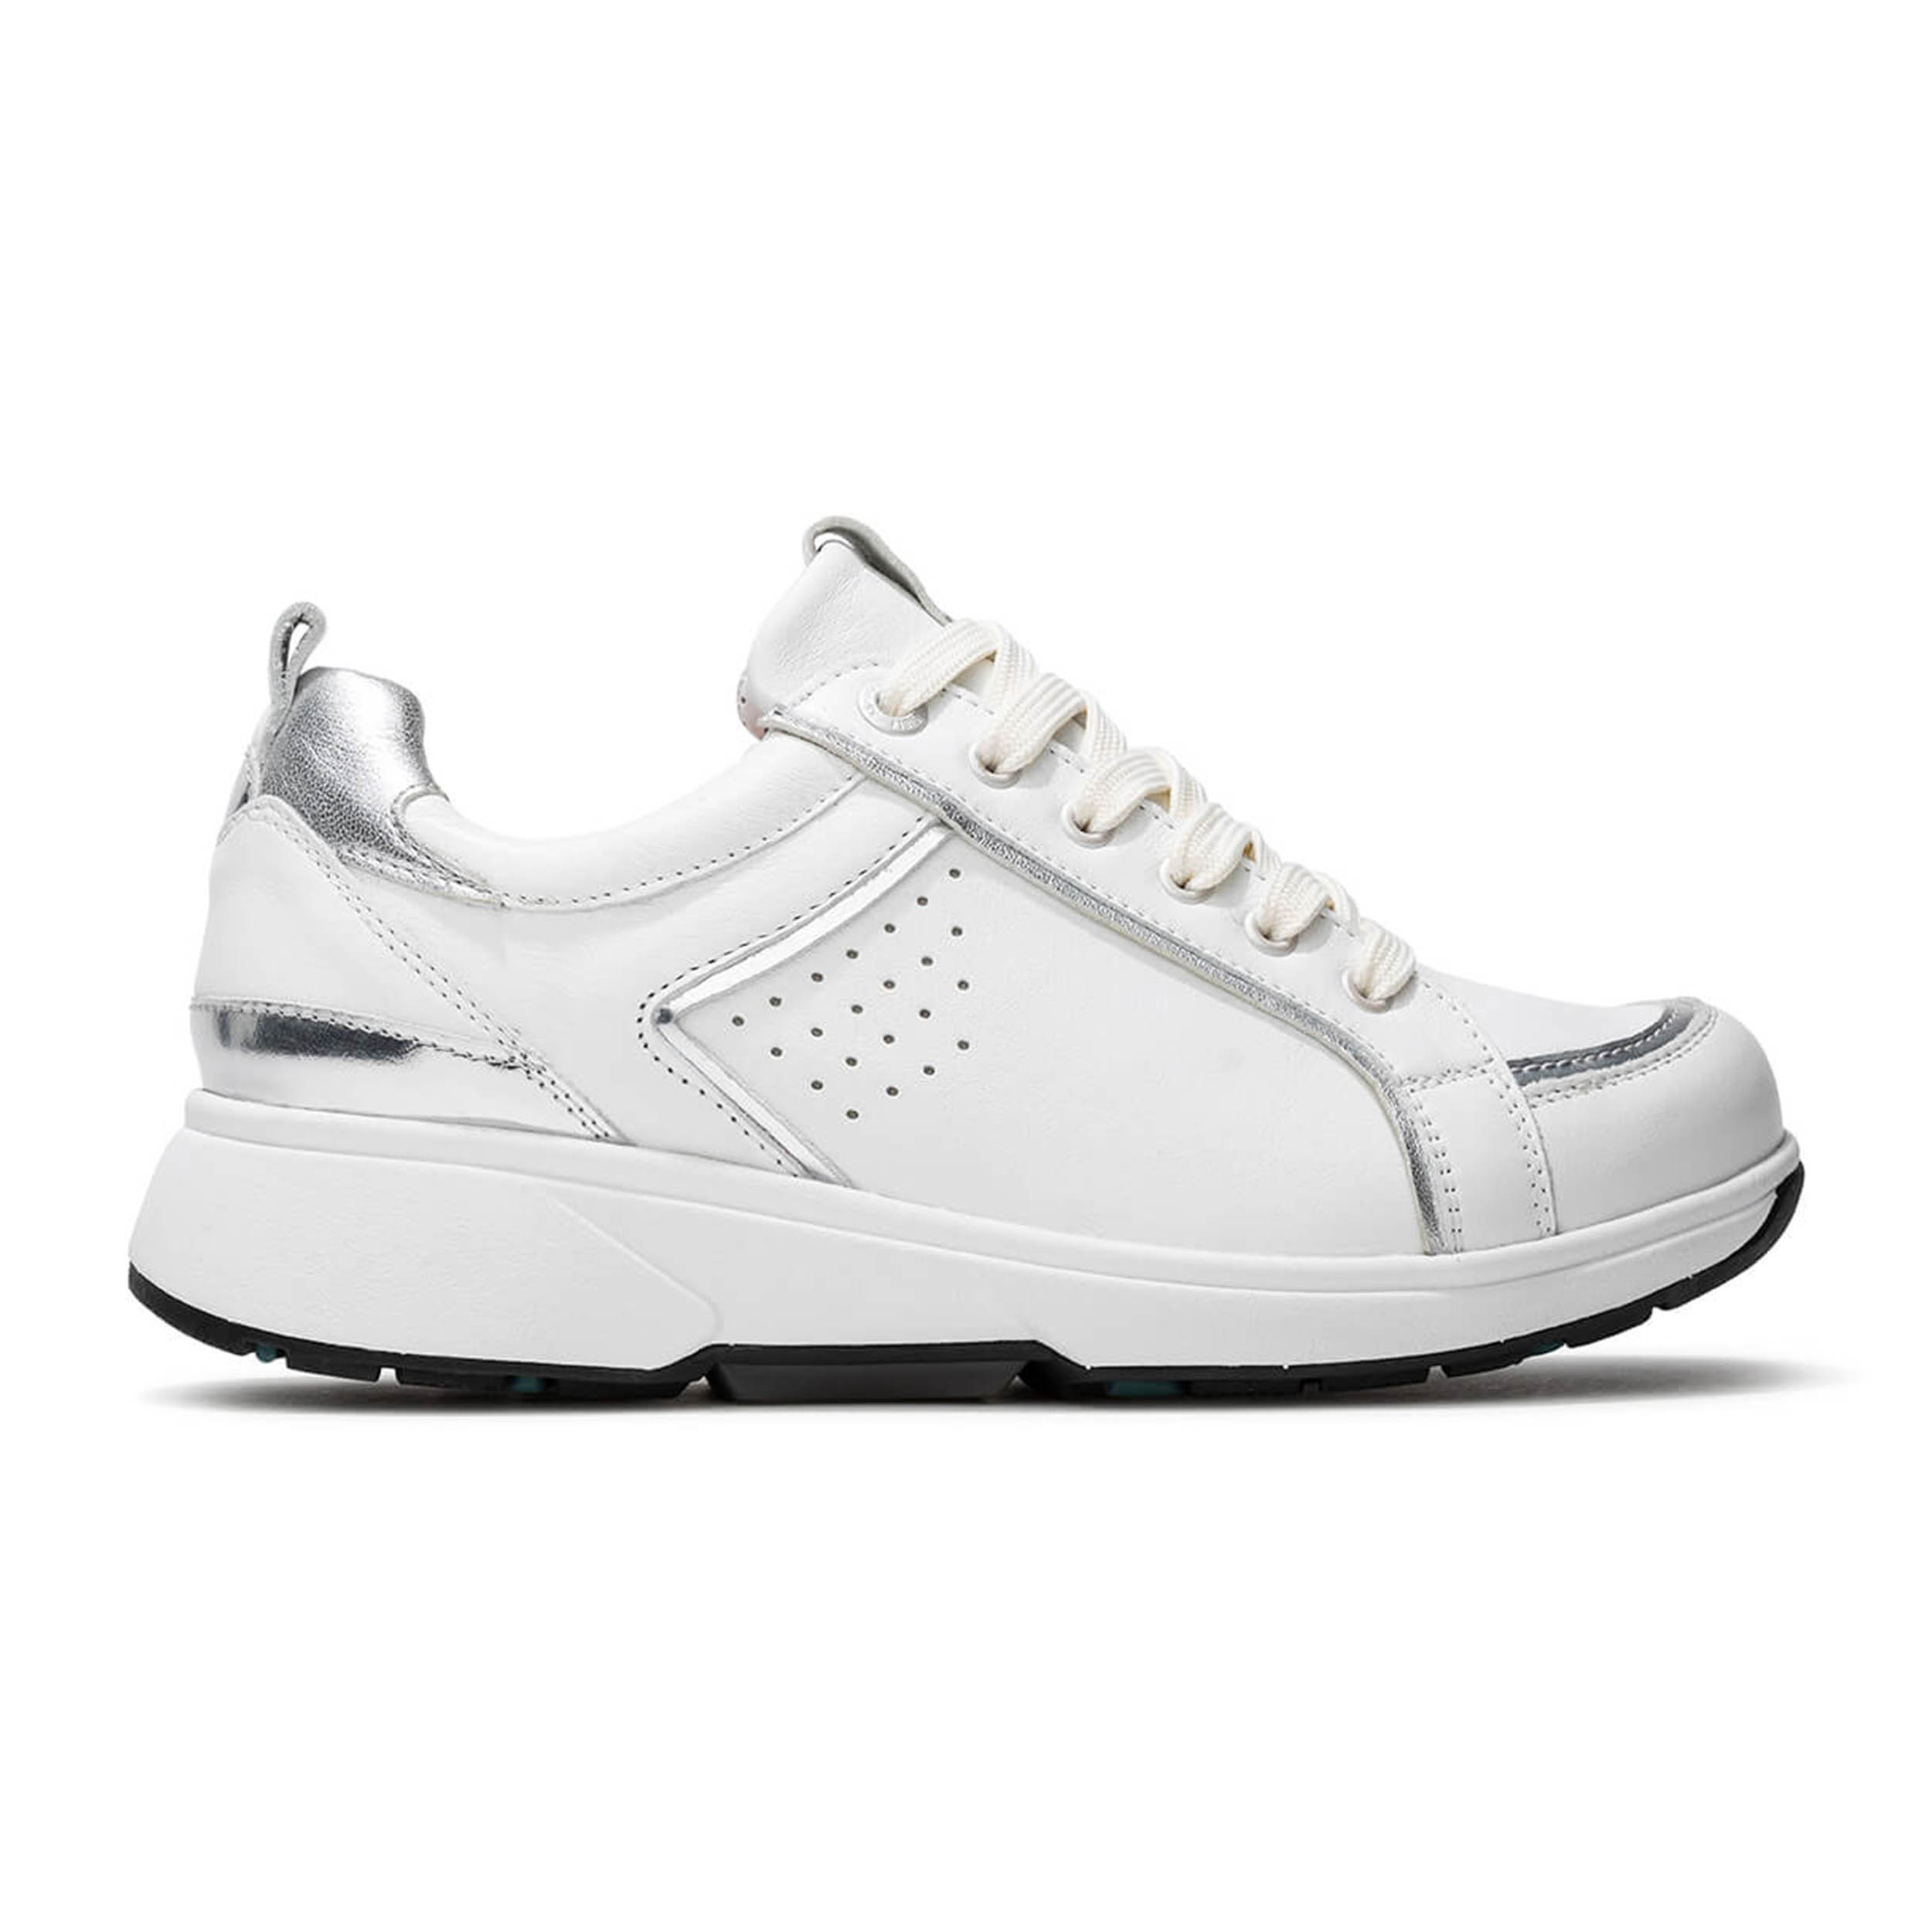 Xsensible 30223.3 Sneaker Malta White Hx